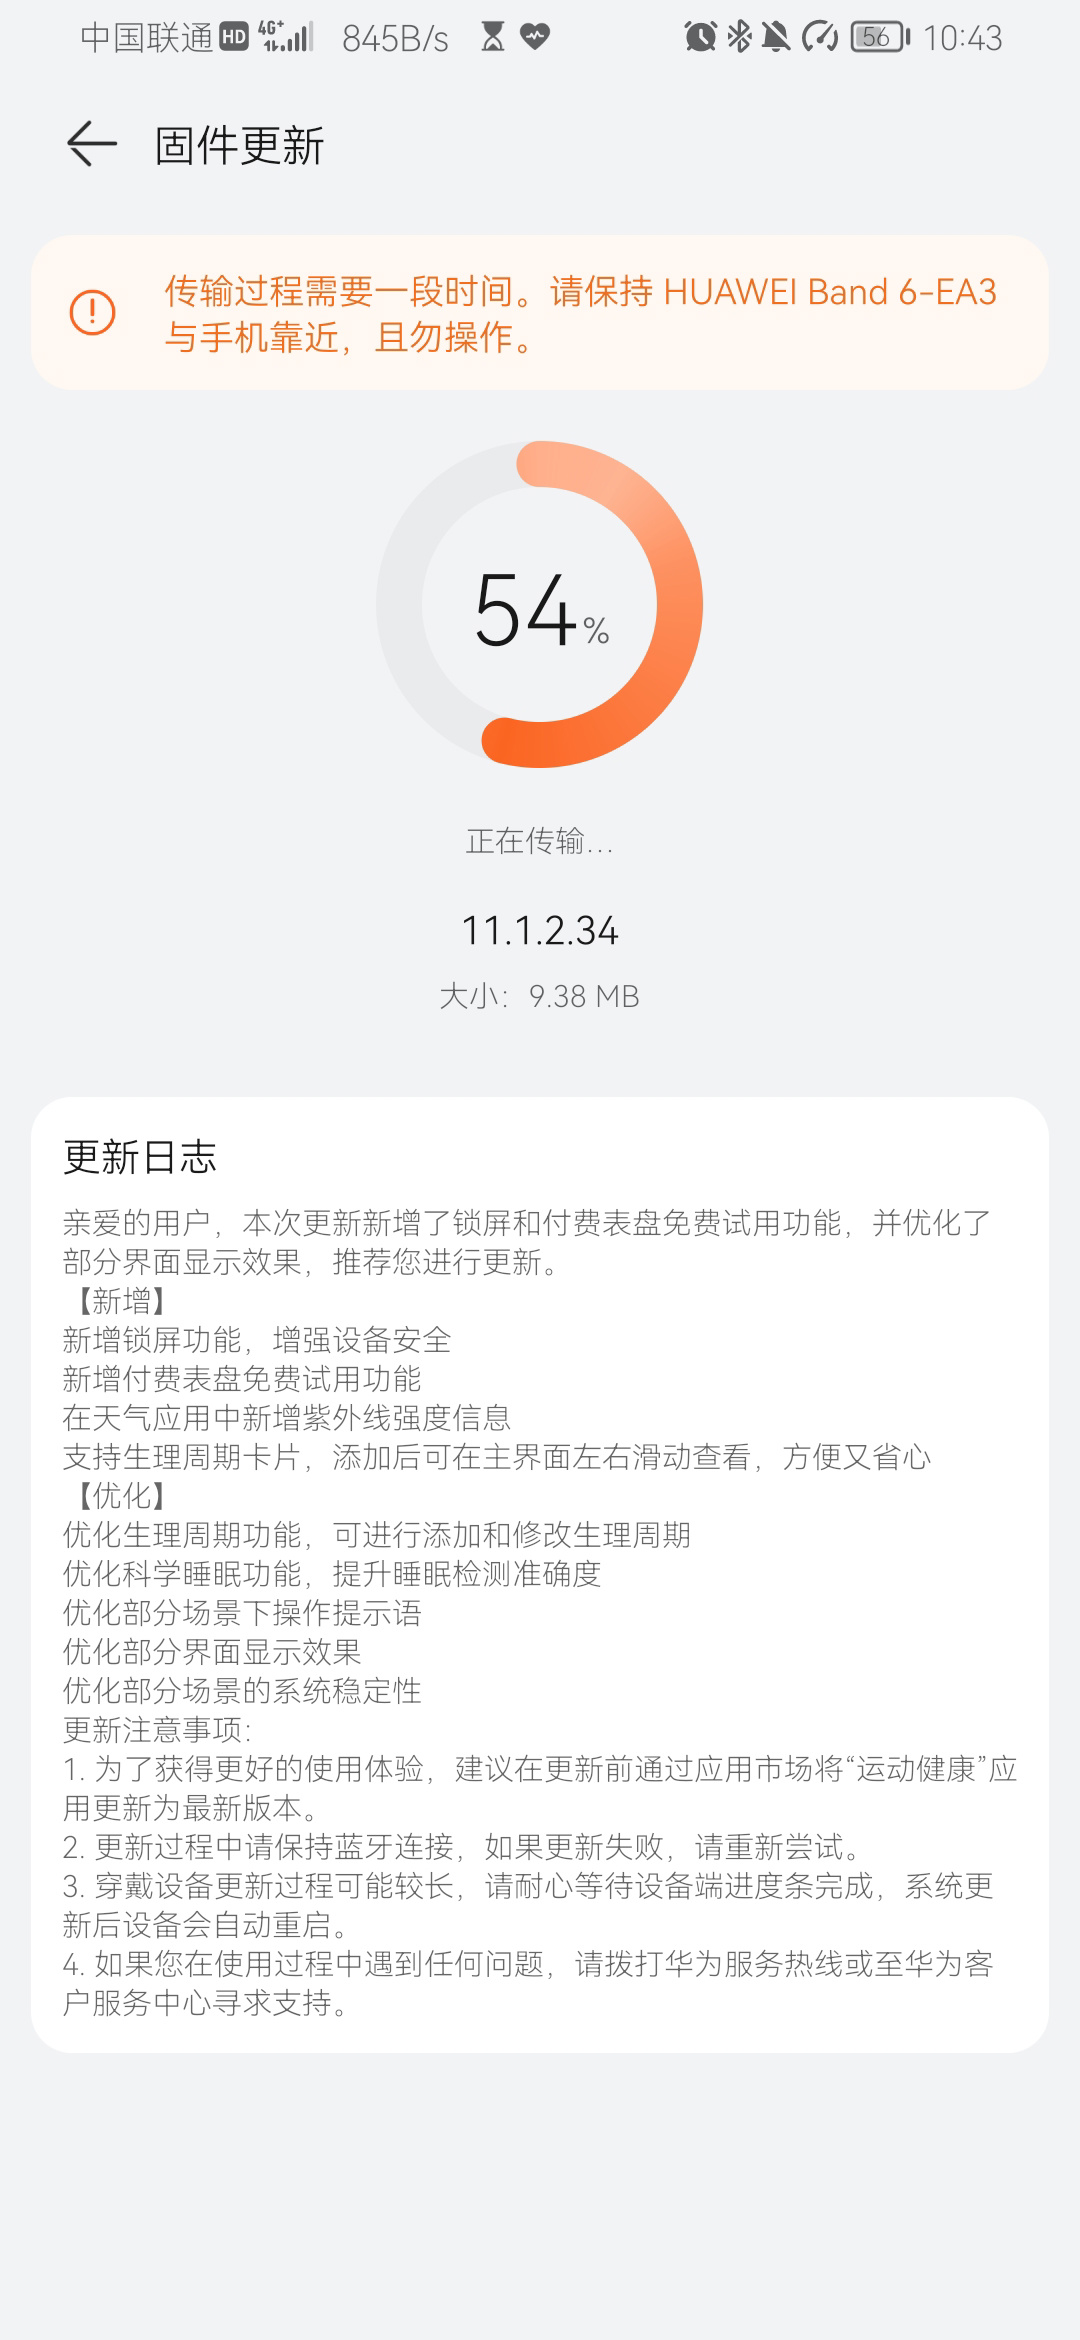 Huawei Band 6 update 11.1.2.34